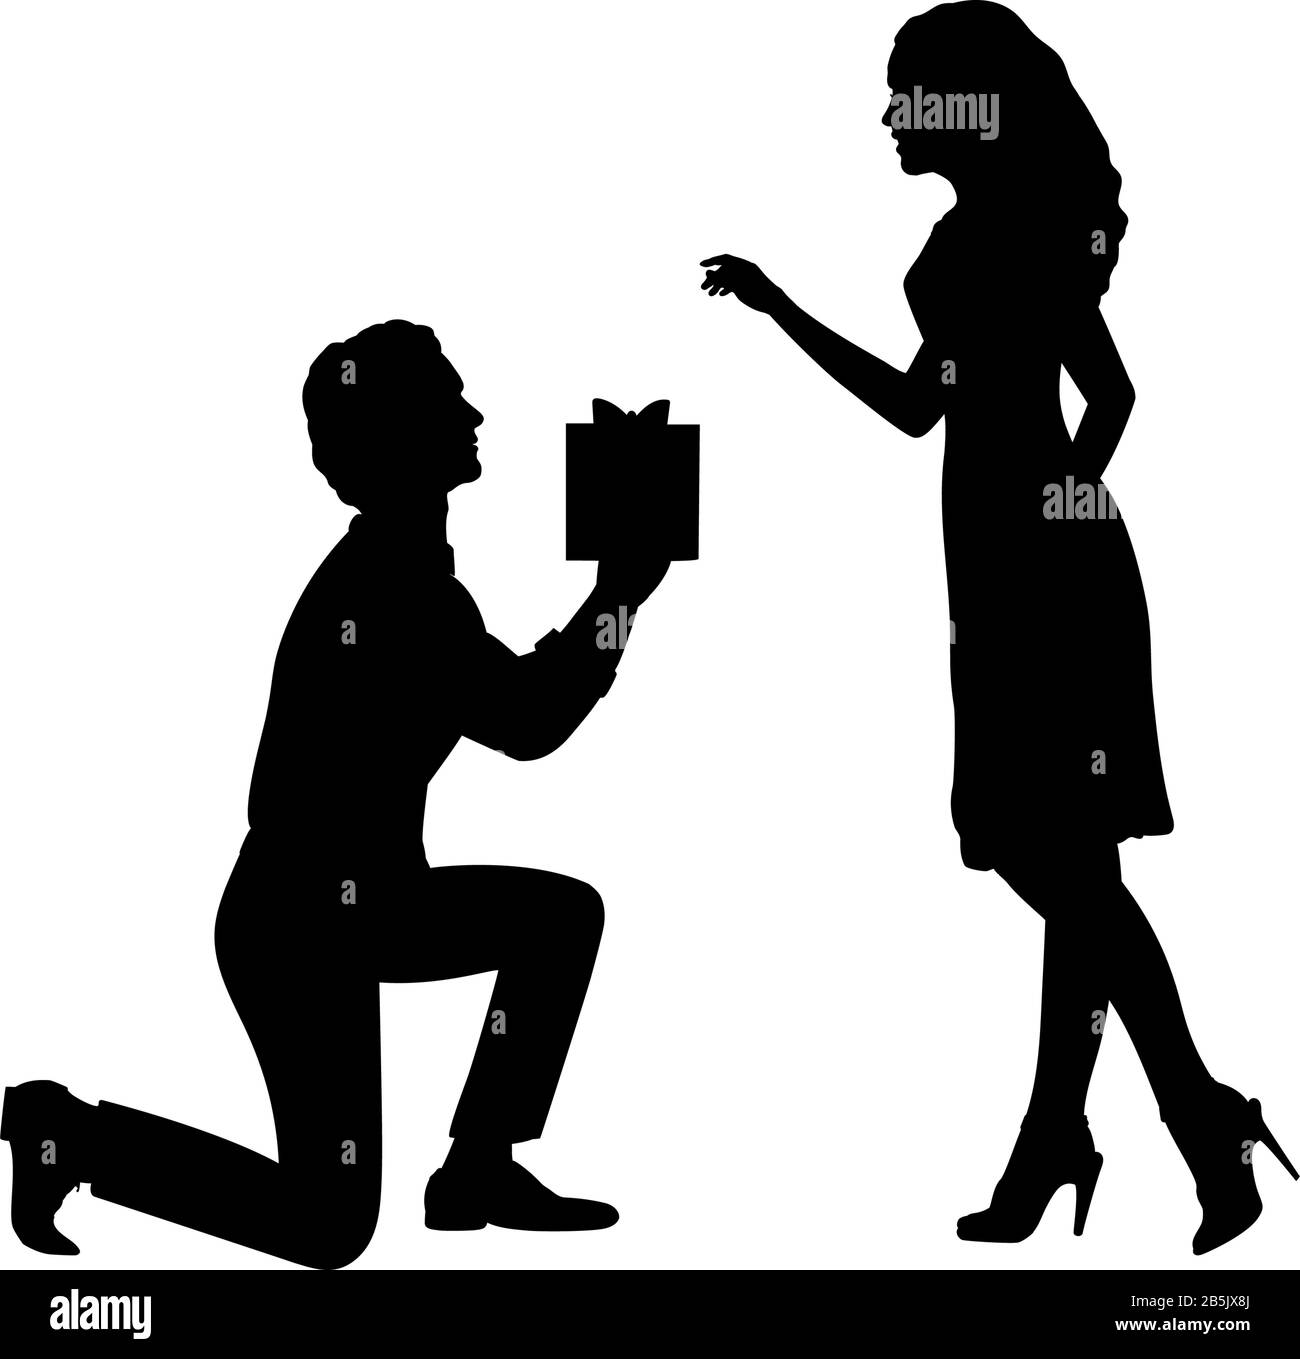 Die Silhouette eines Mannes, der auf dem Knie steht, gibt der Frau ein Geschenk. Grafiksymbol der Abbildung Stock Vektor